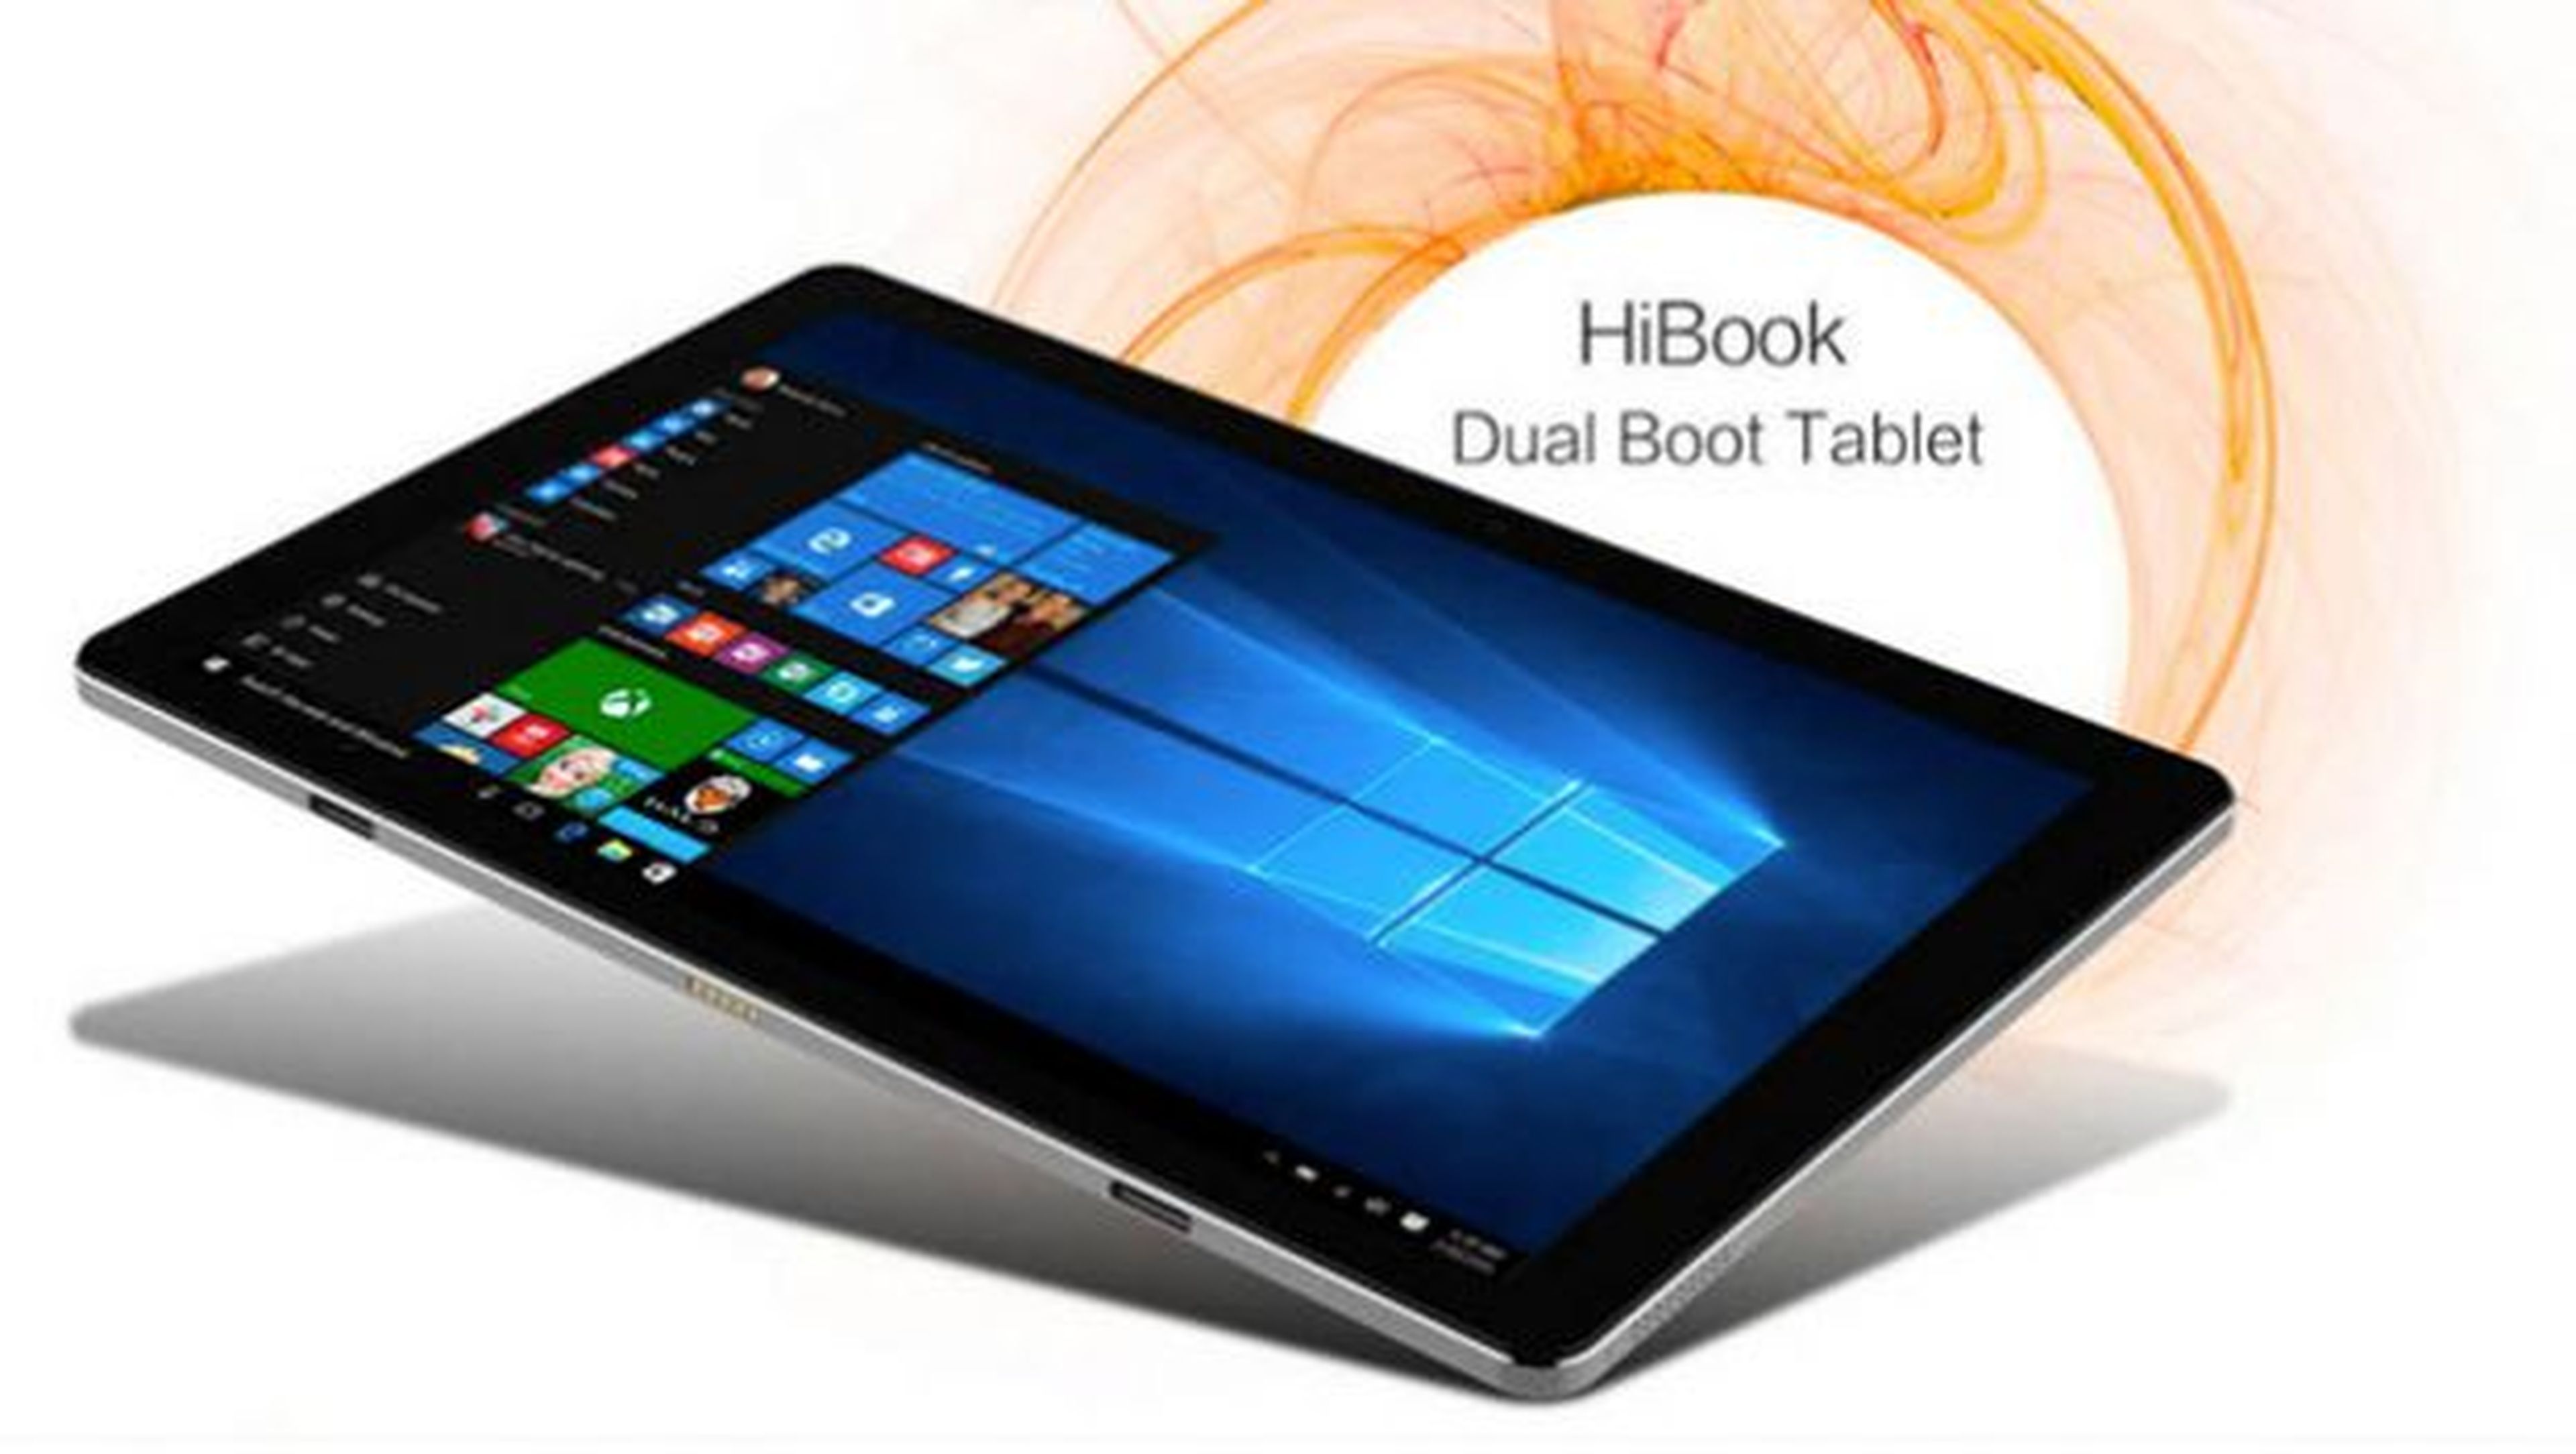 La tablet Chuwi HiBook cuenta con unas dimensiones muy contenidas.